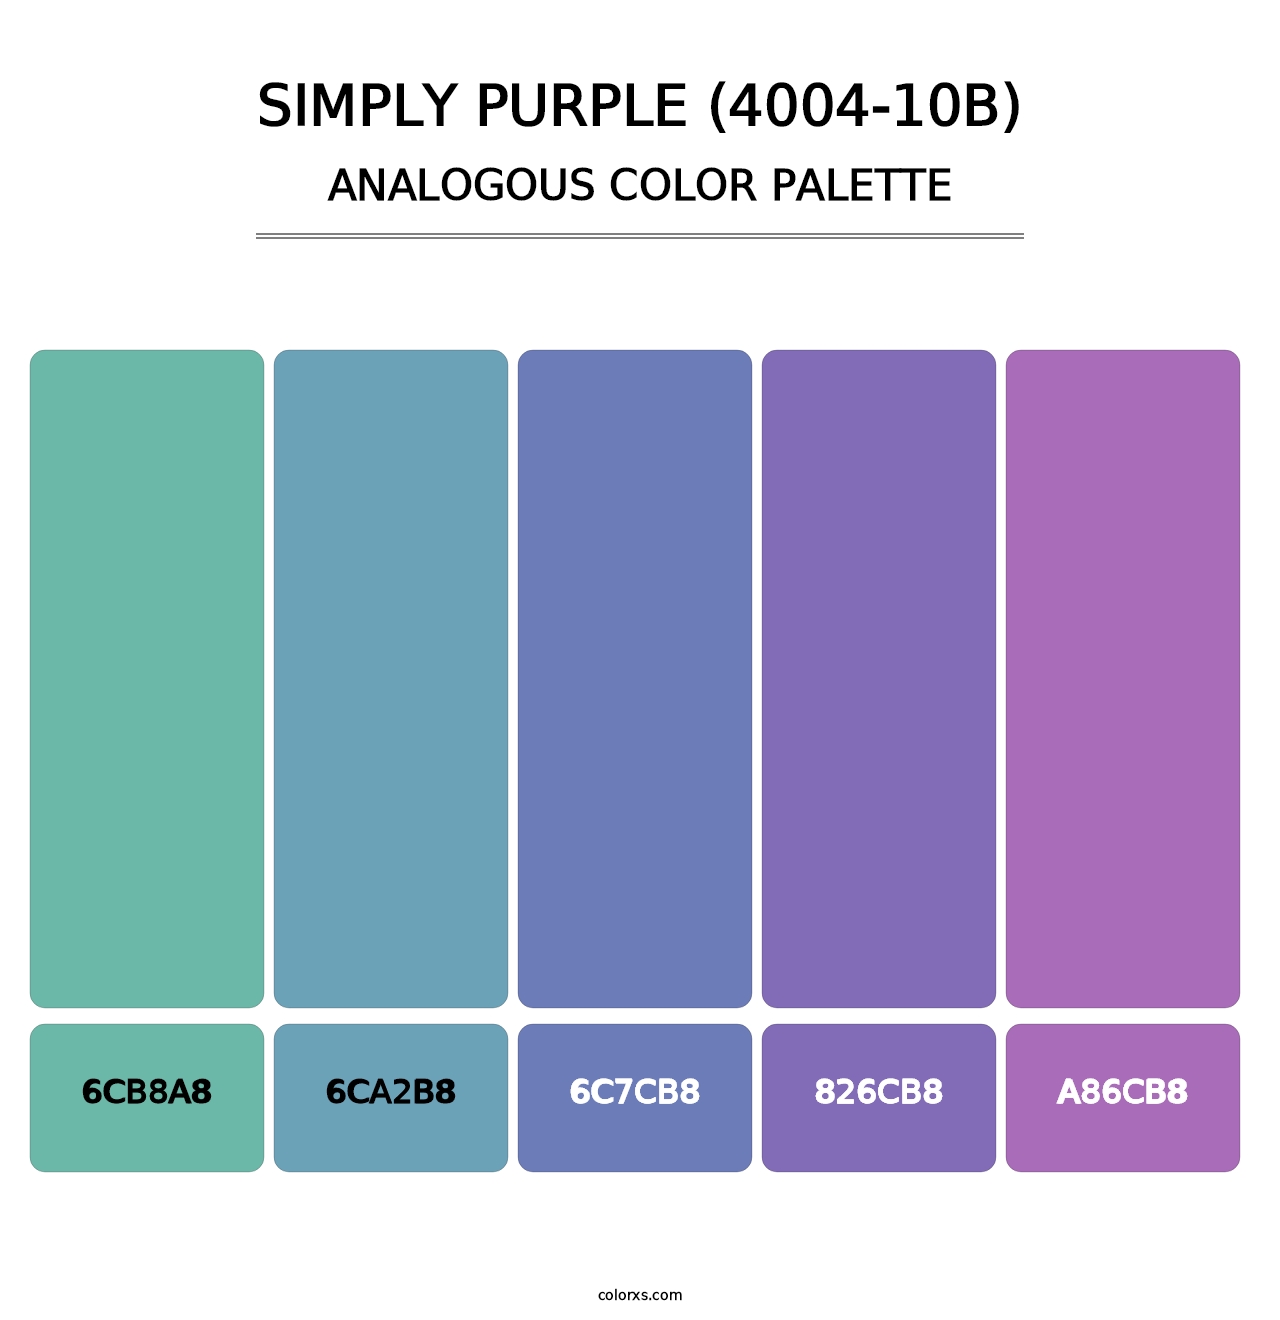 Simply Purple (4004-10B) - Analogous Color Palette